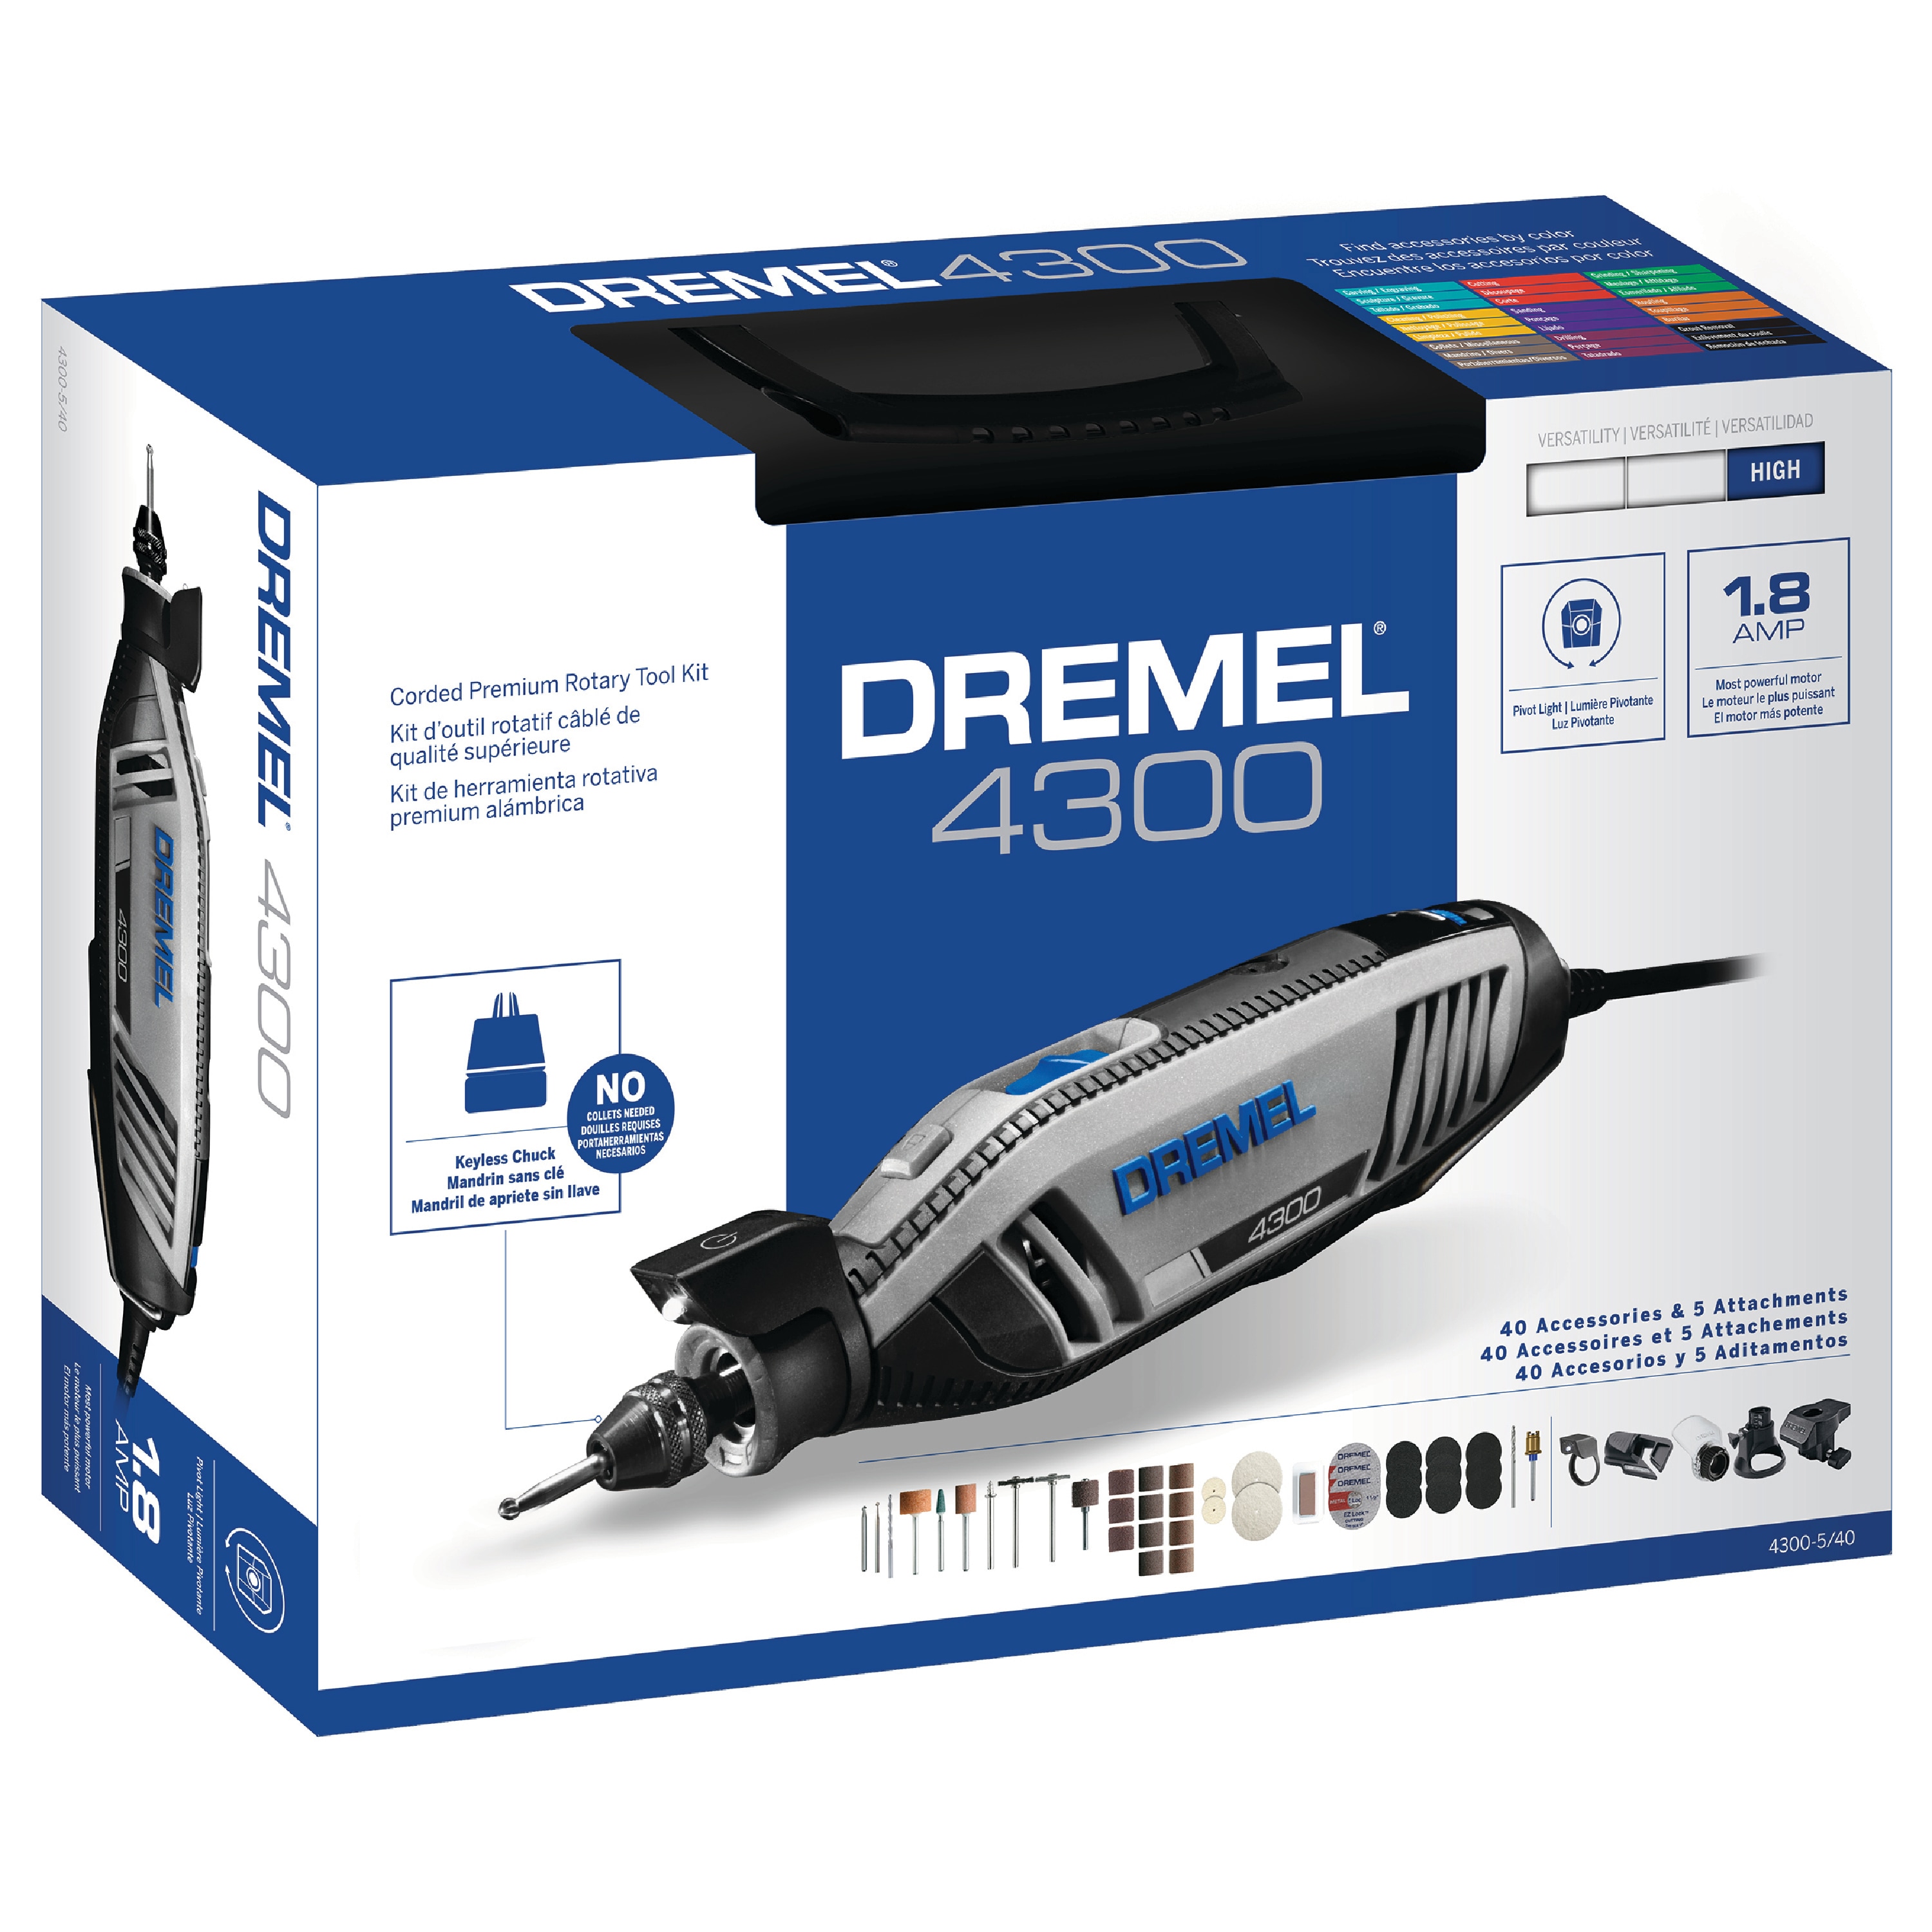 Dremel 4300 Rotary Tool Kit